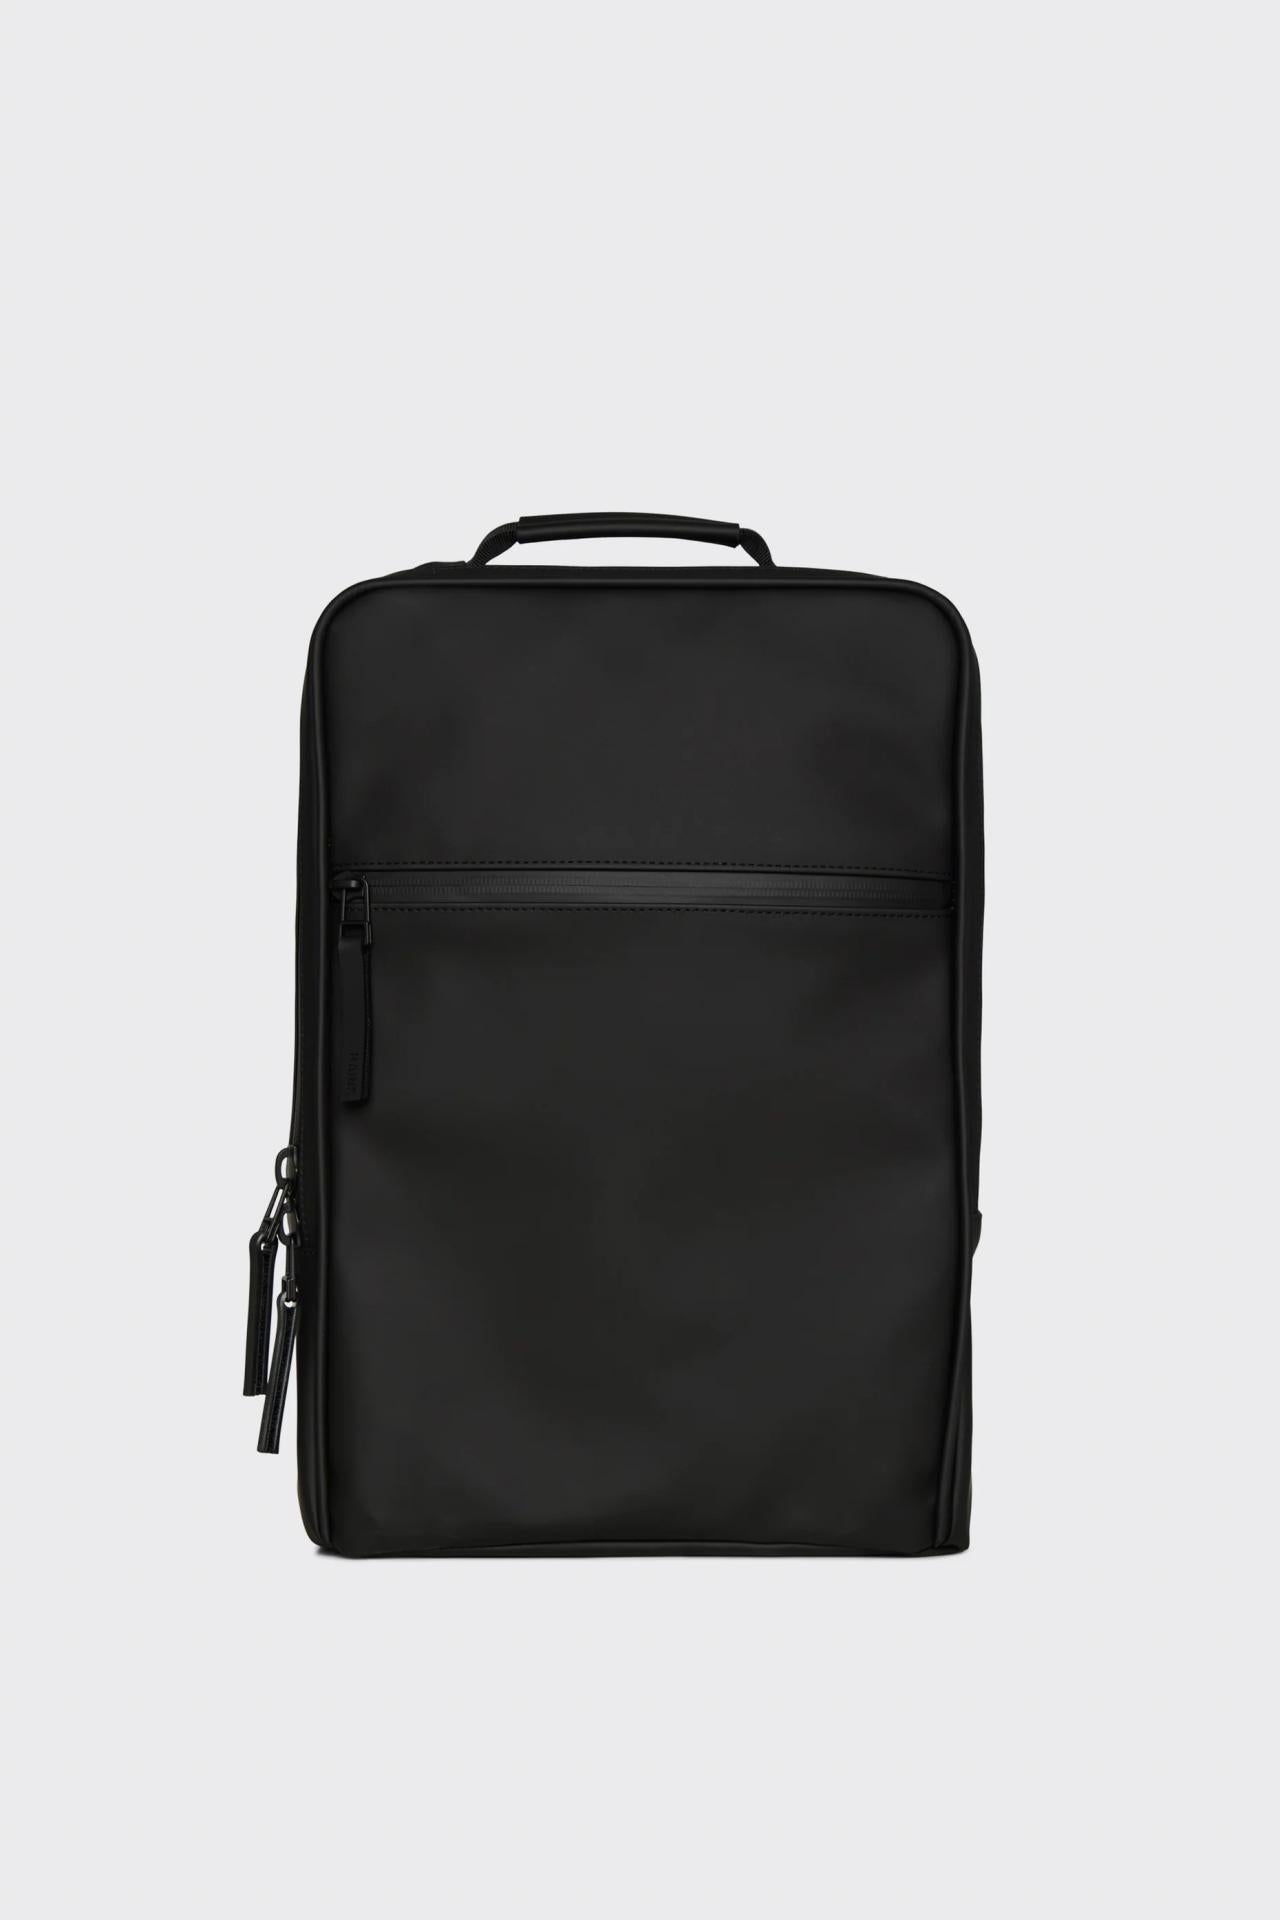 Rains Rucksack Book Backpack W3 12310-01 Black Black